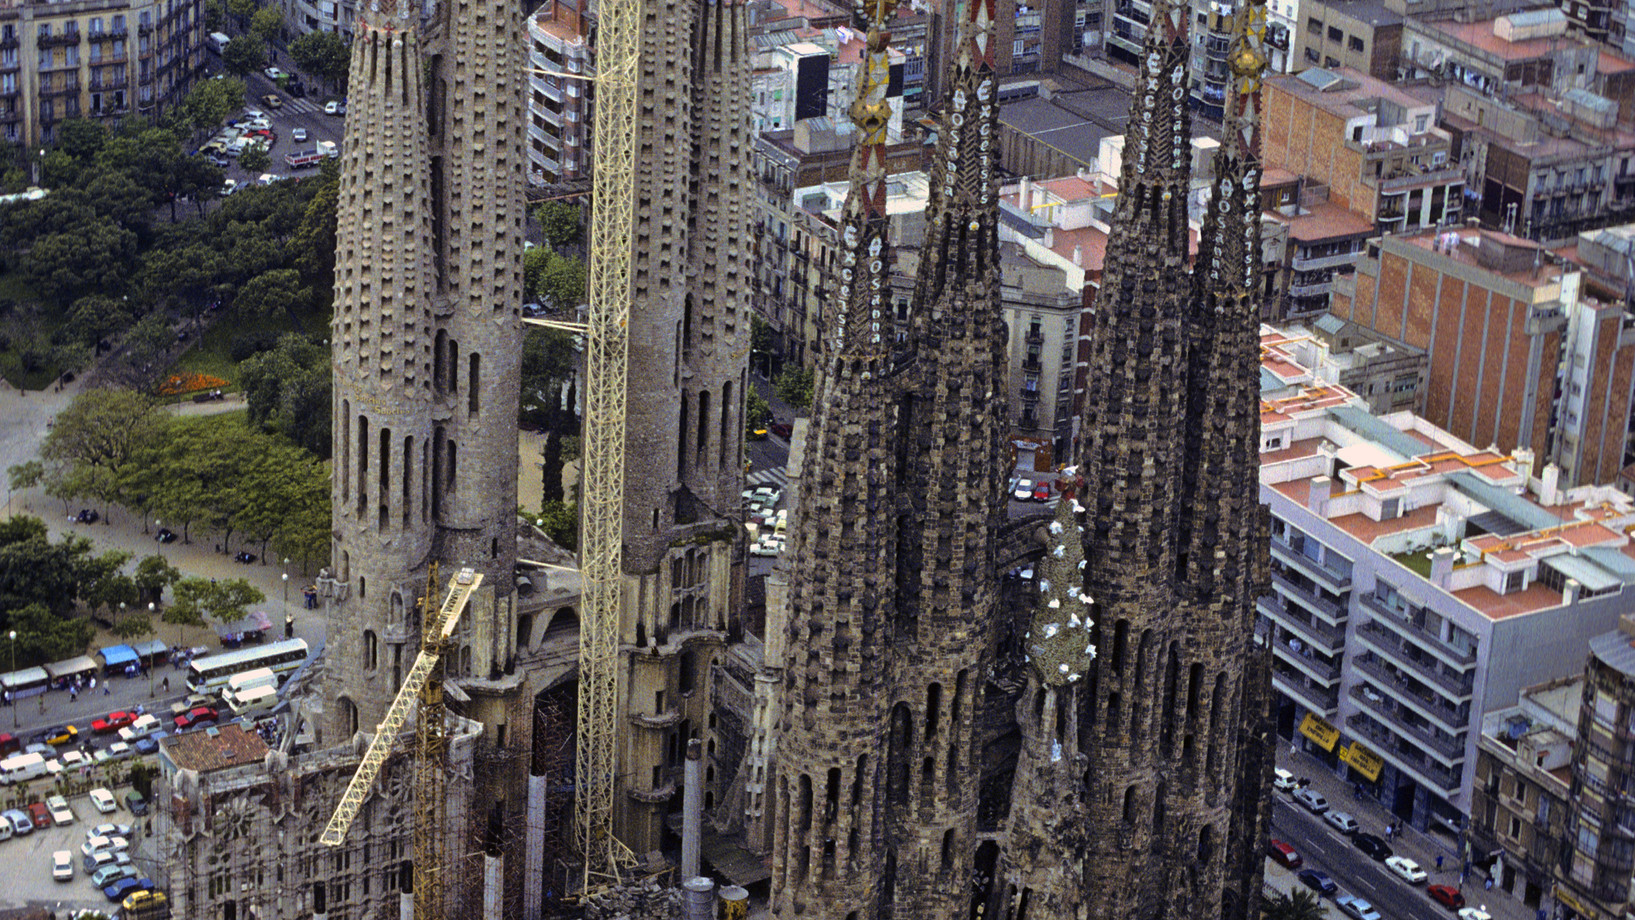  Wenige bauliche non-finitos sind berühmter als Antoni Gaudís Basilika der Heiligen Familie in Barcelona – und keines ist gefährdeter. Ihm droht Vollendung.

Die Sühnekirche der Heiligen Familie – spanisch-katalanisch Temple Expiatori de la Sagrada Família –  ist als non-finito der Baugeschichte eine Ikone der Entschleunigung. Antoni Gaudí übernahm im Jahr 1883 das bestehende gotisierende Projekt einer riesigen Basilika für 13 000 Gläubige: ein 90 Meter langes fünfschiffiges Langhaus überkreuzt sich mit …